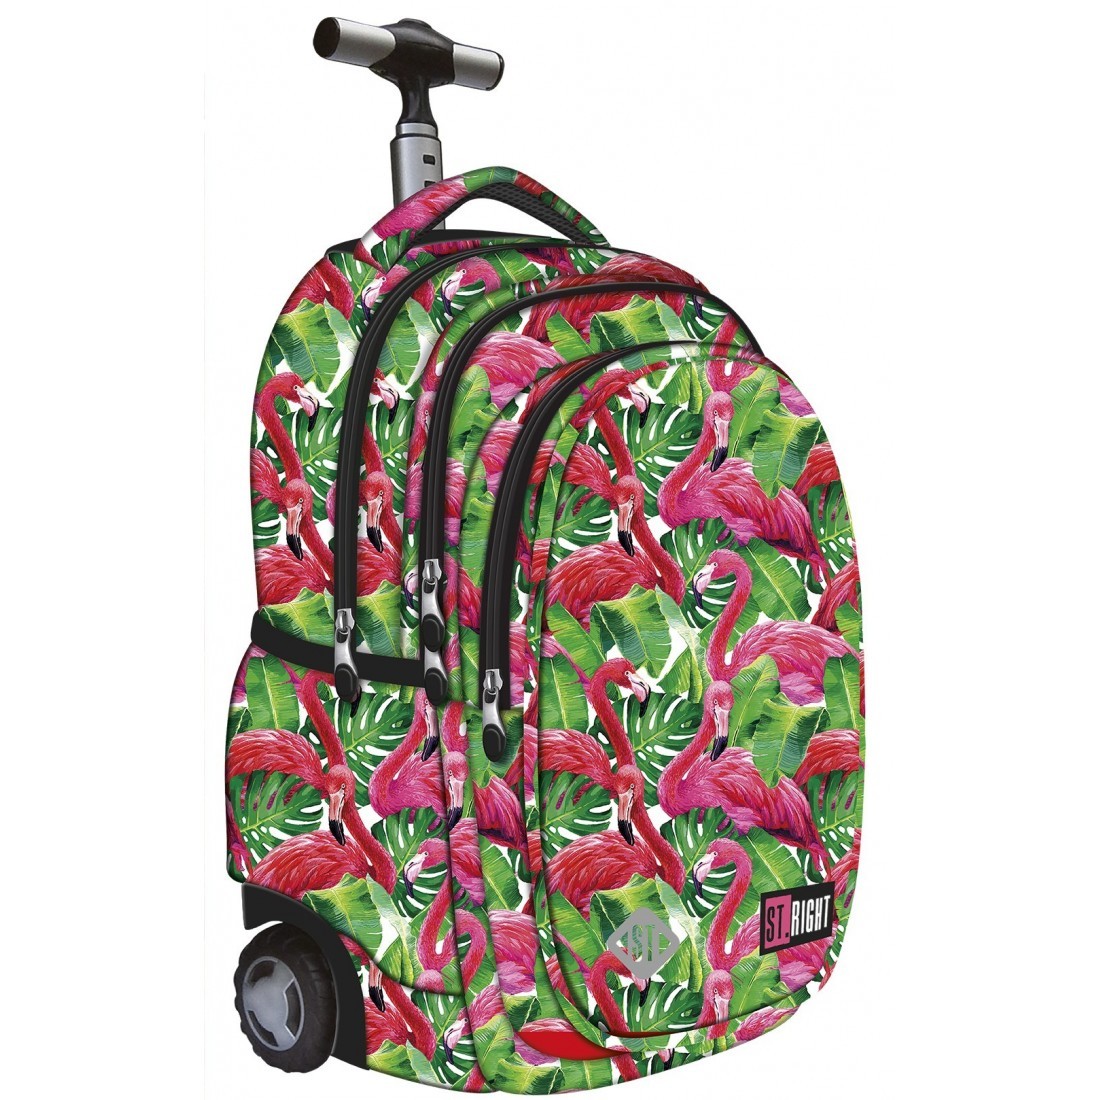 Plecak na kółkach ST.RIGHT FLAMINGO PINK&GREEN różowe flamingi HIT - plecak-tornister.pl